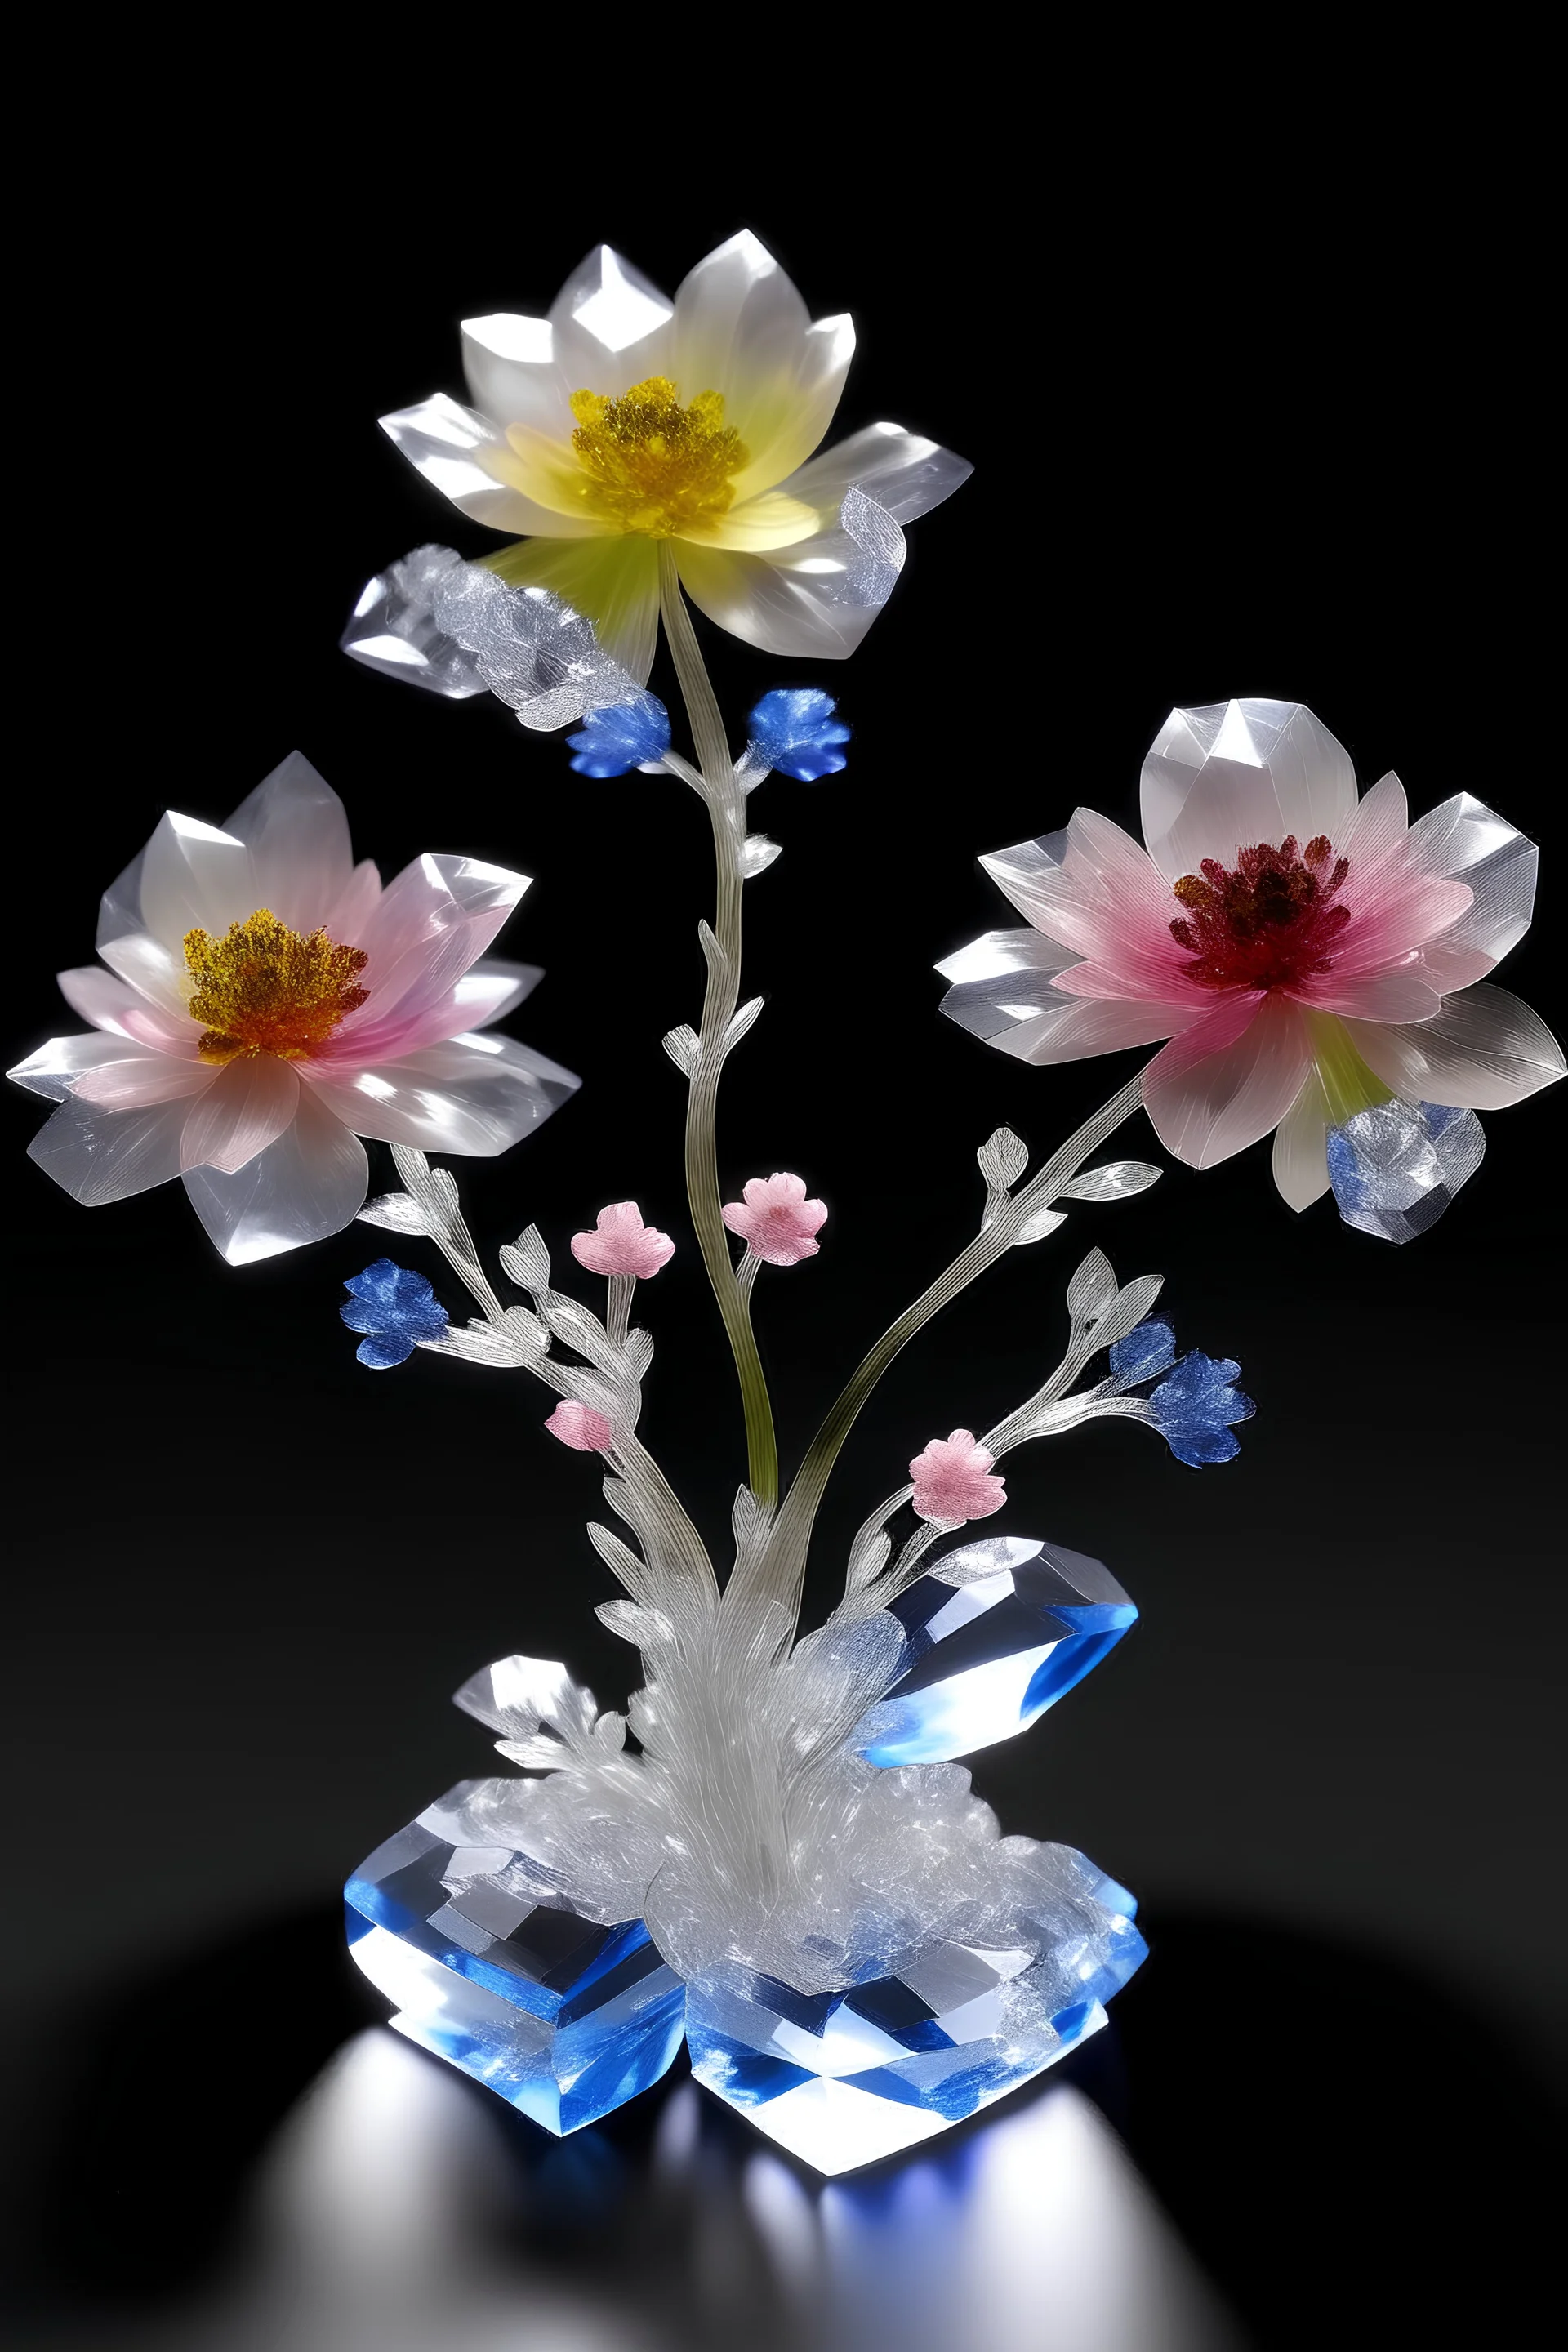 des fleurs en cristaux avec des arbres avec une plaine